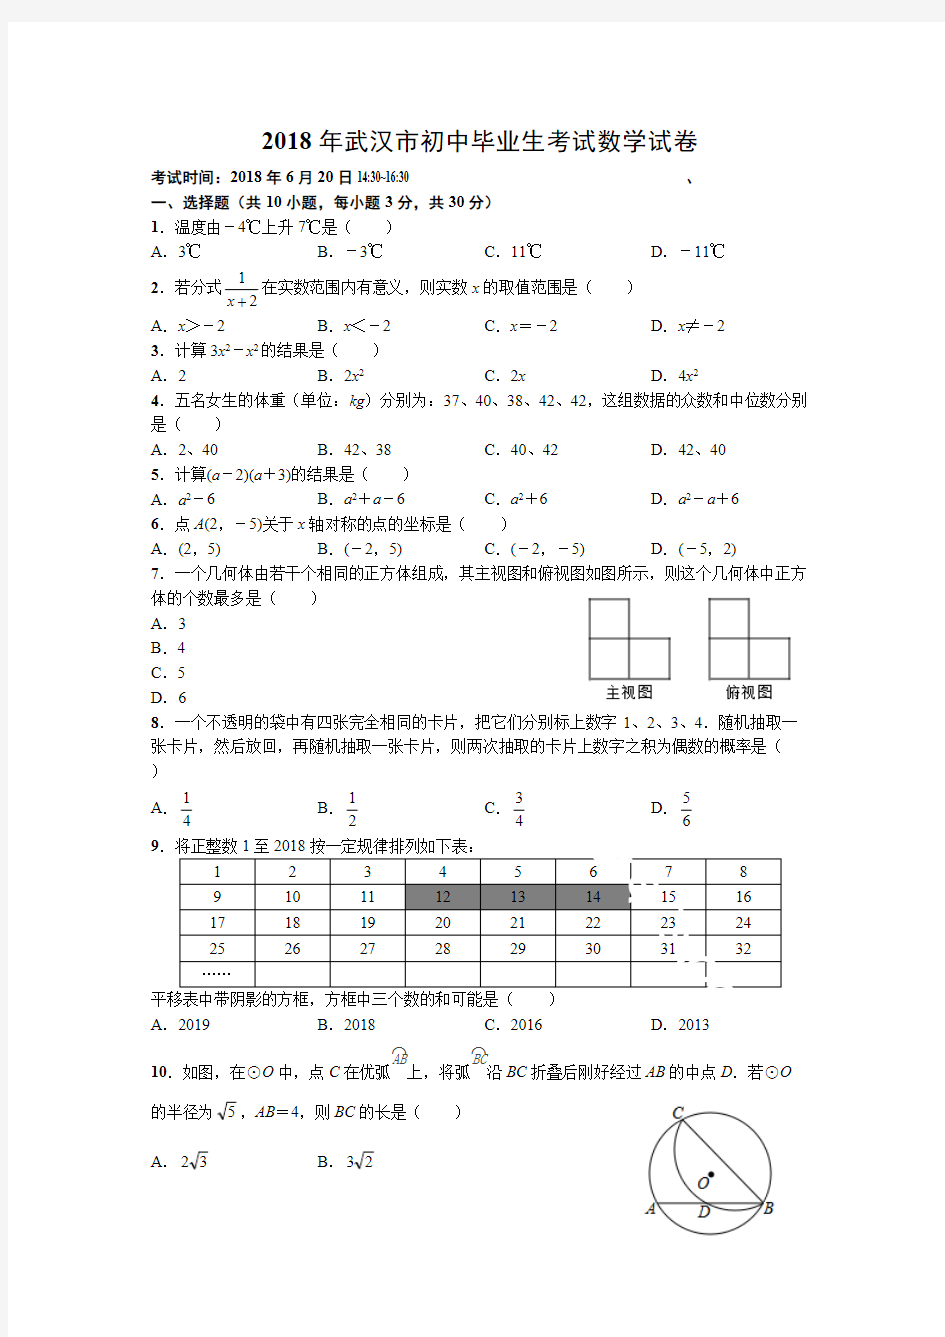 (完整版)2018年武汉市中考数学试卷及答案解析